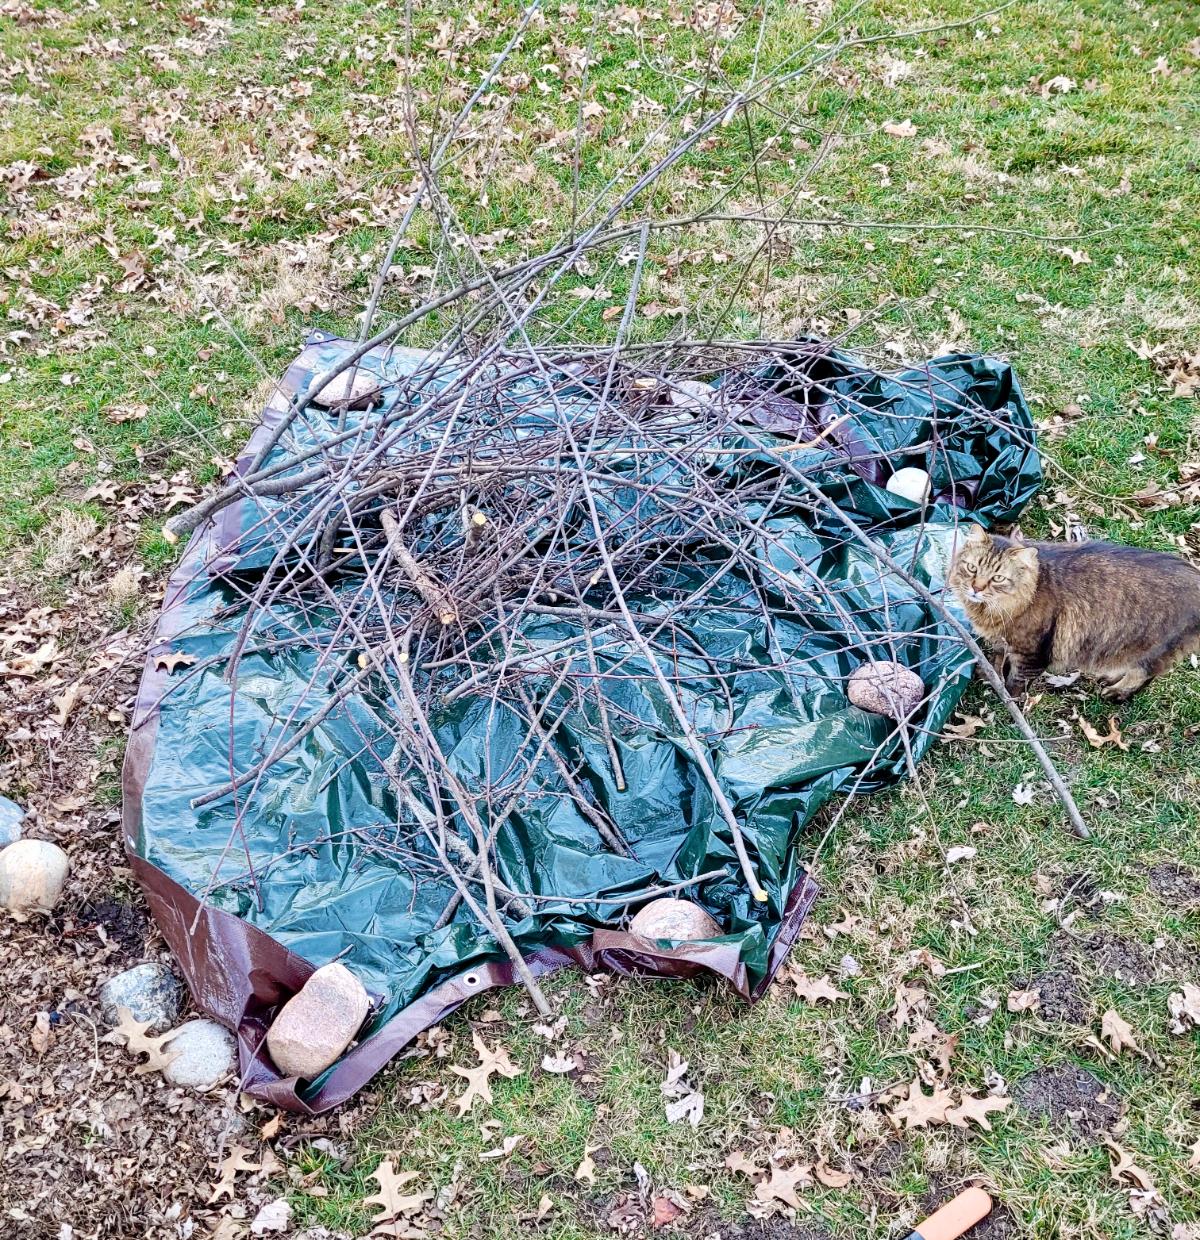 A tarp collecting pruned sticks